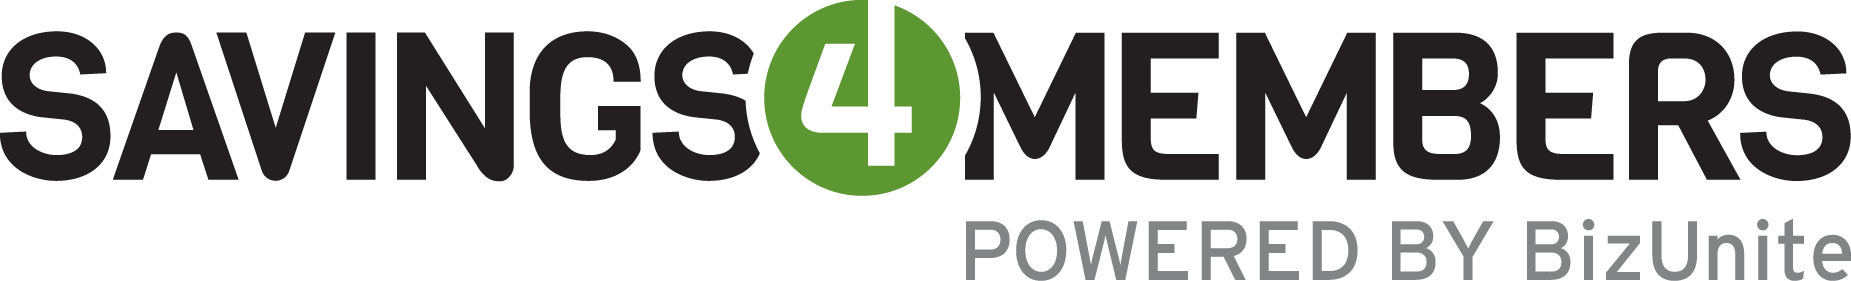 Savings4Membmers Logo